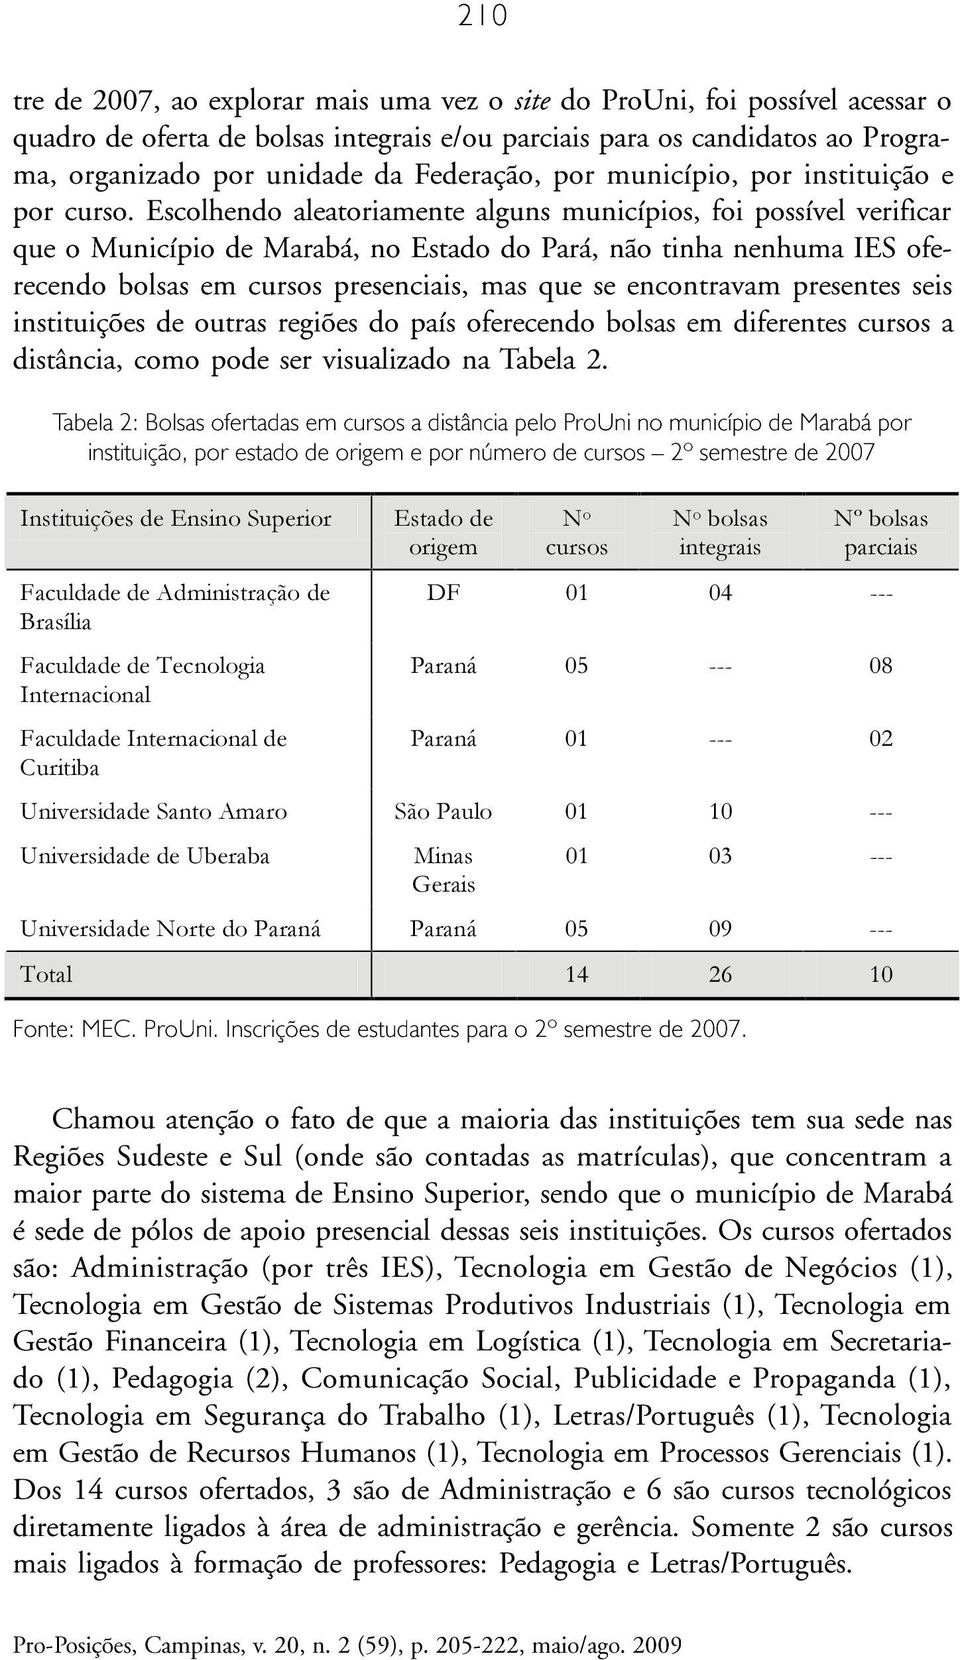 Escolhendo aleatoriamente alguns municípios, foi possível verificar que o Município de Marabá, no Estado do Pará, não tinha nenhuma IES oferecendo bolsas em cursos presenciais, mas que se encontravam